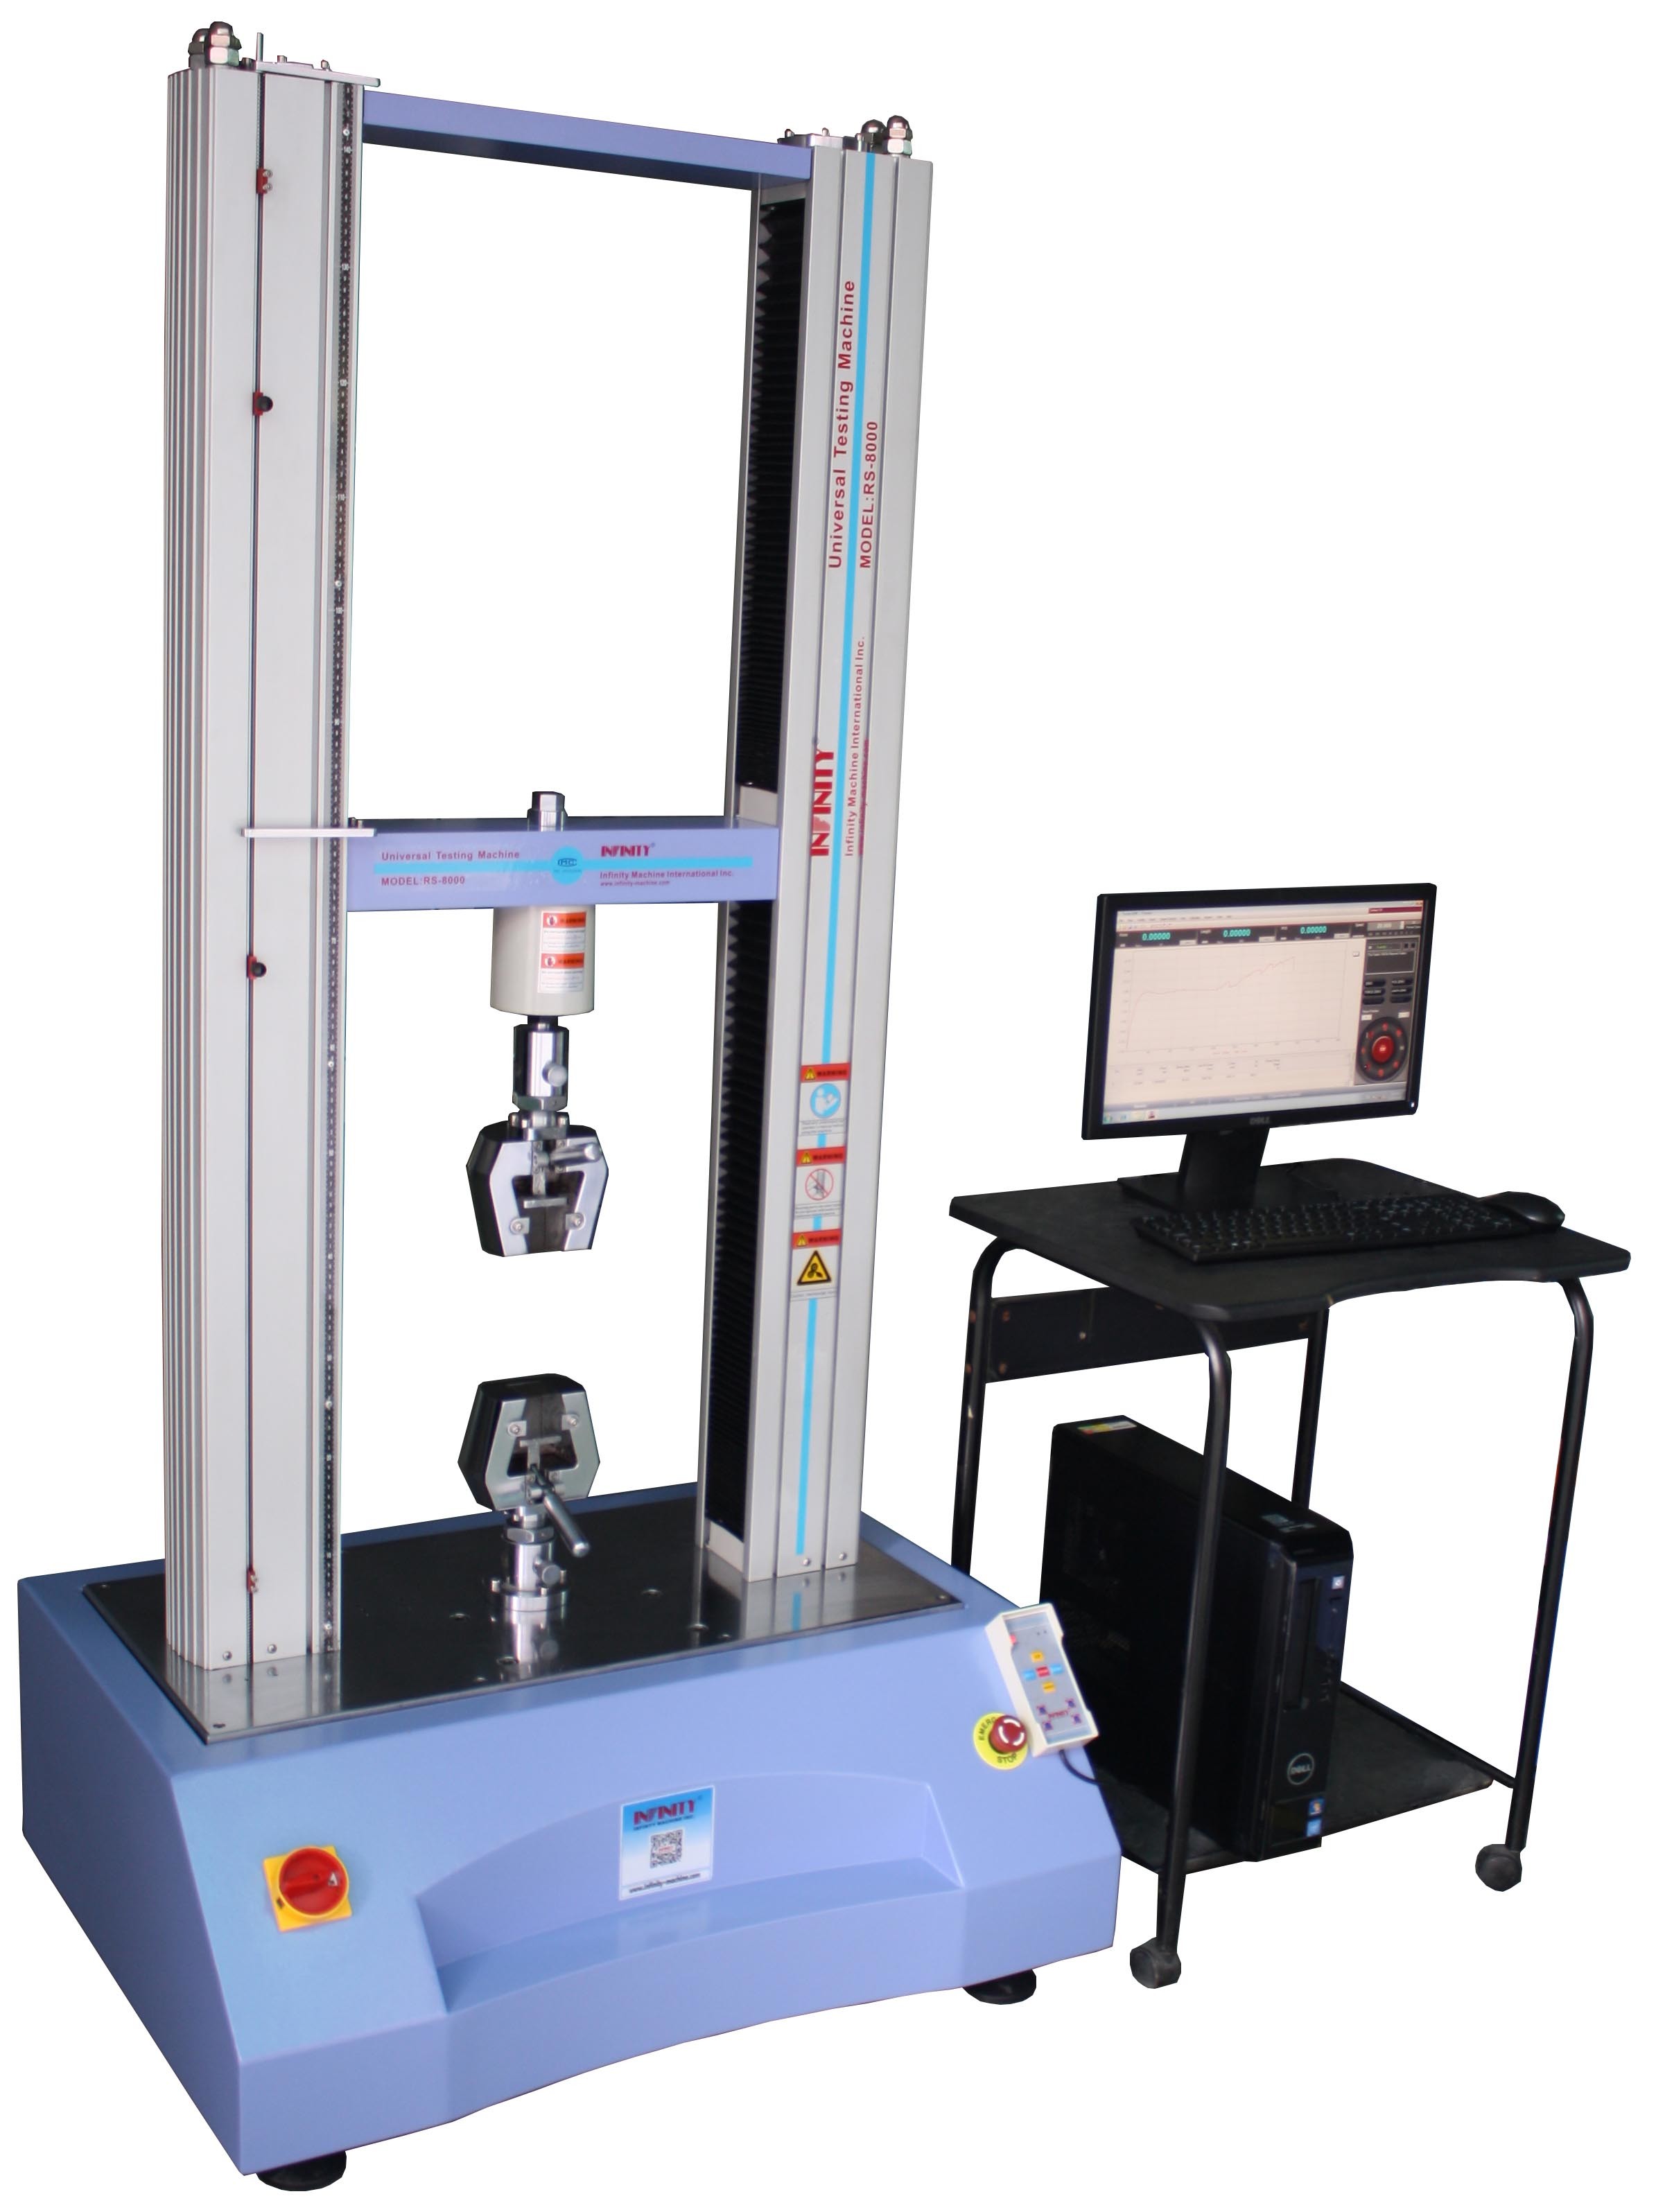 लैब धातु / स्टील वायर टेस्ट के लिए 10 केएन सर्वो नियंत्रण इलेक्ट्रॉनिक यूनिवर्सल परीक्षण मशीन